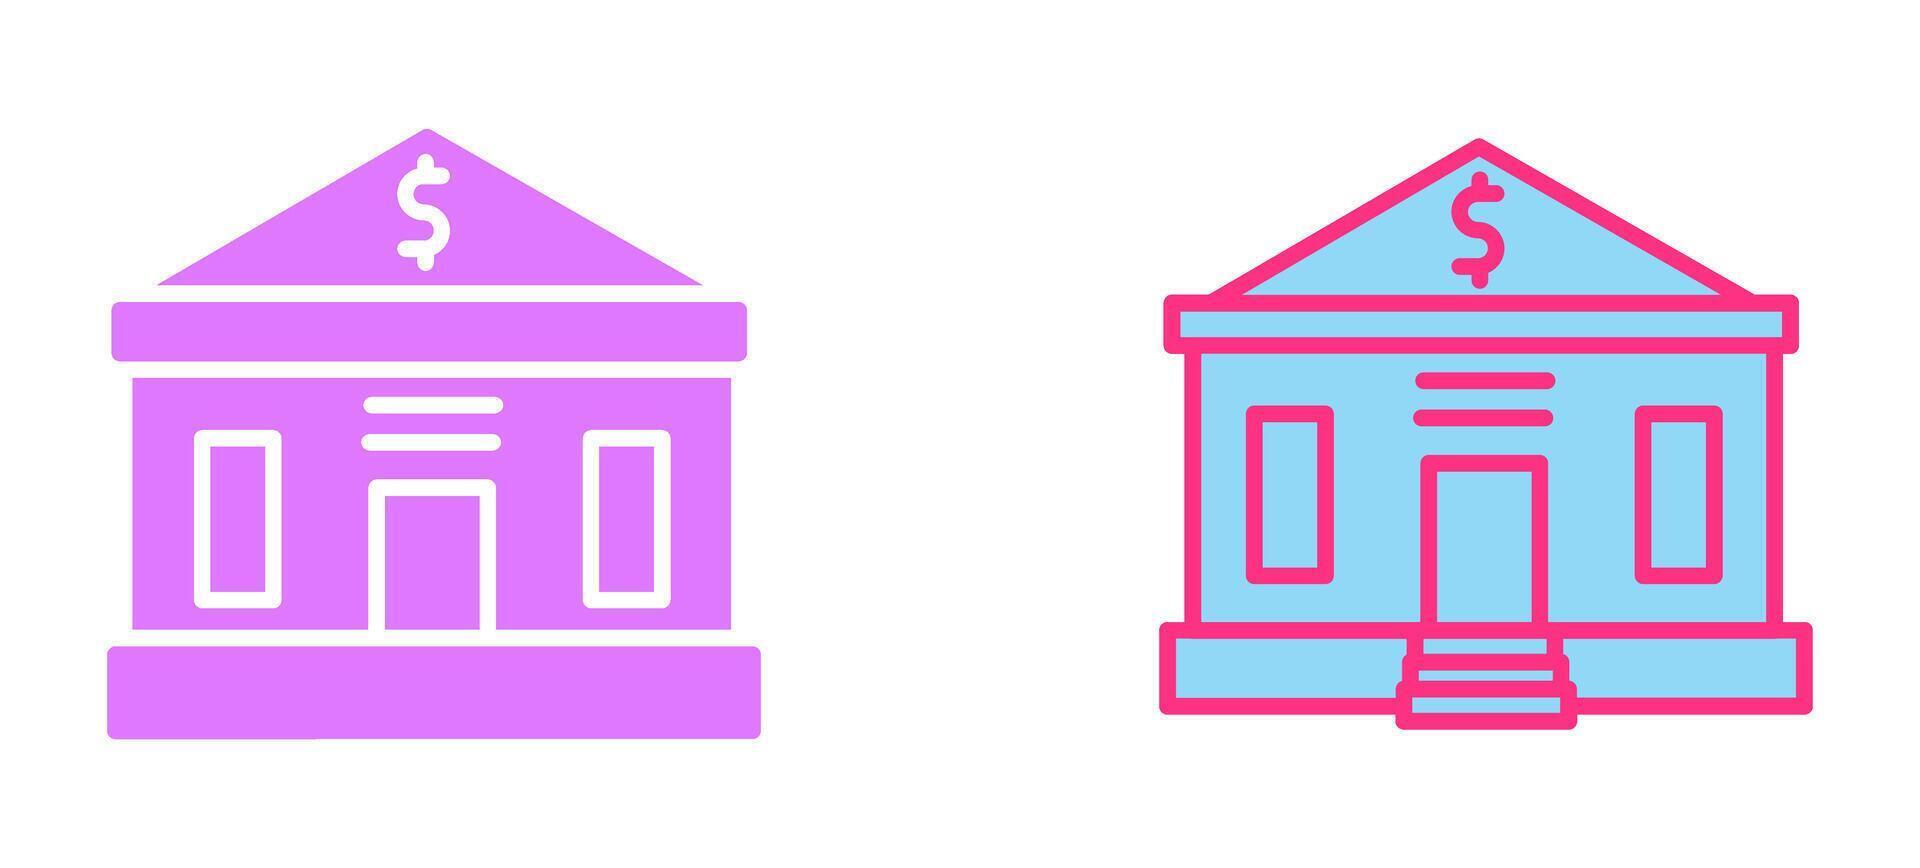 icône de bâtiment de banque vecteur